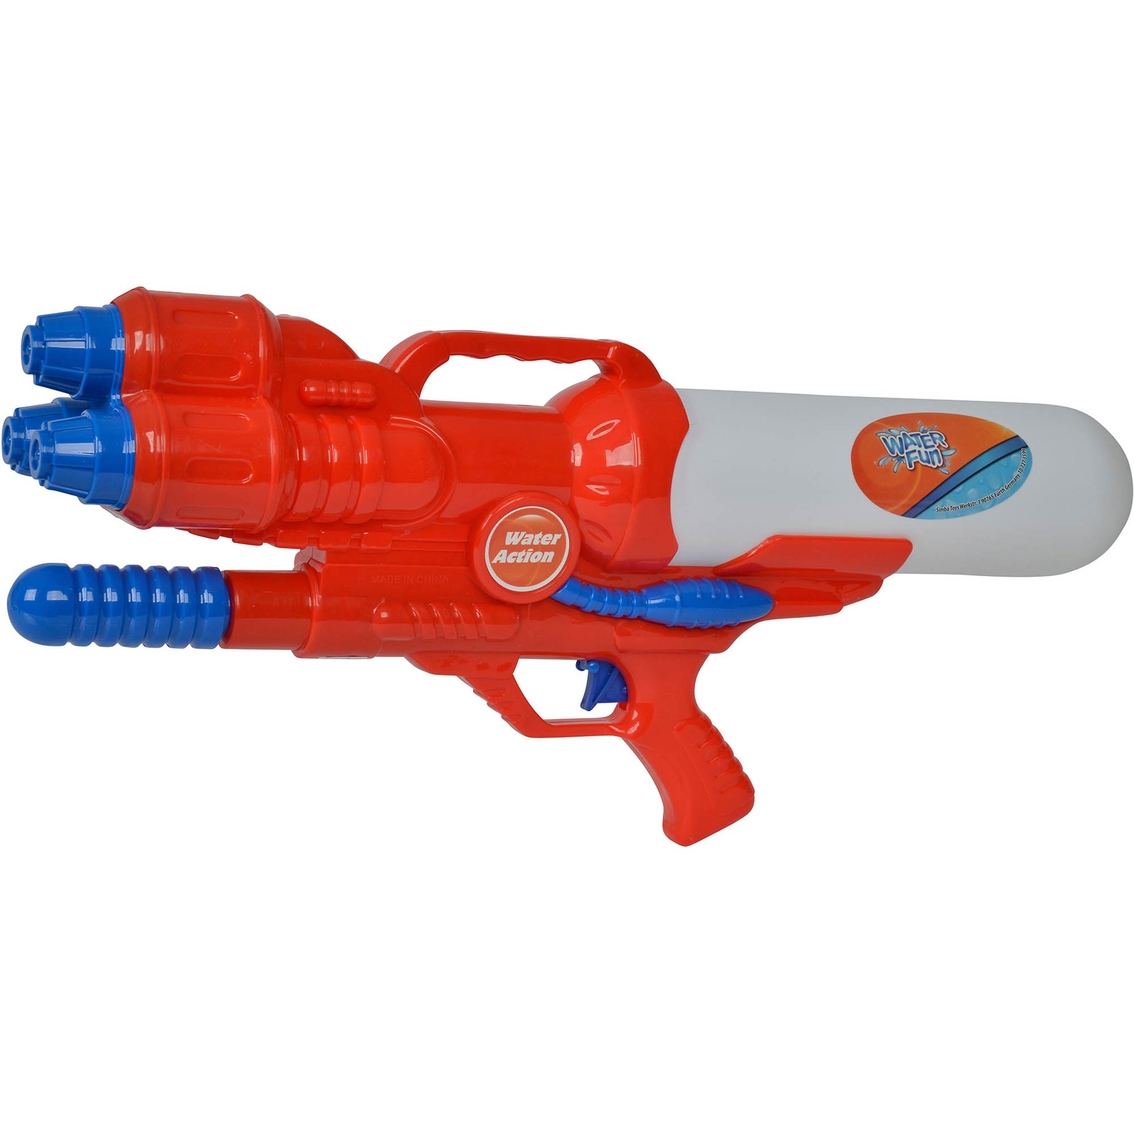 Simba Toys Water Fun Water Gun XL 460 - Image 2 of 4